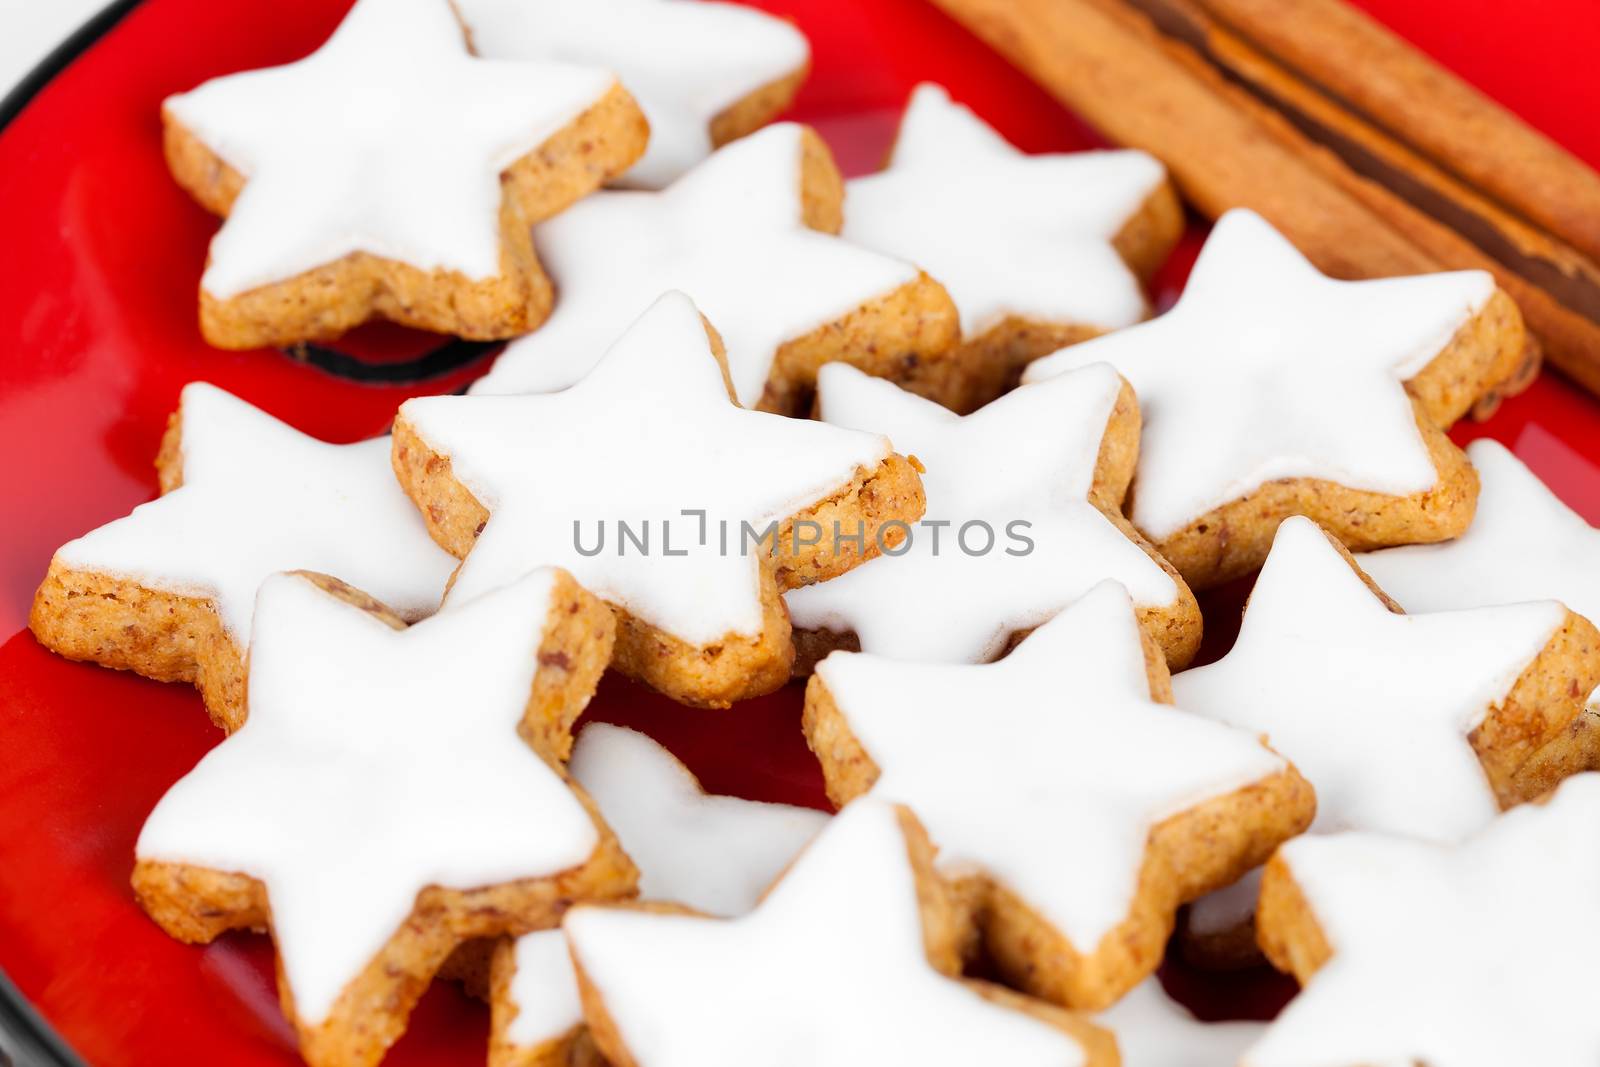 christmas cinnamon star cookies on red plate by motorolka